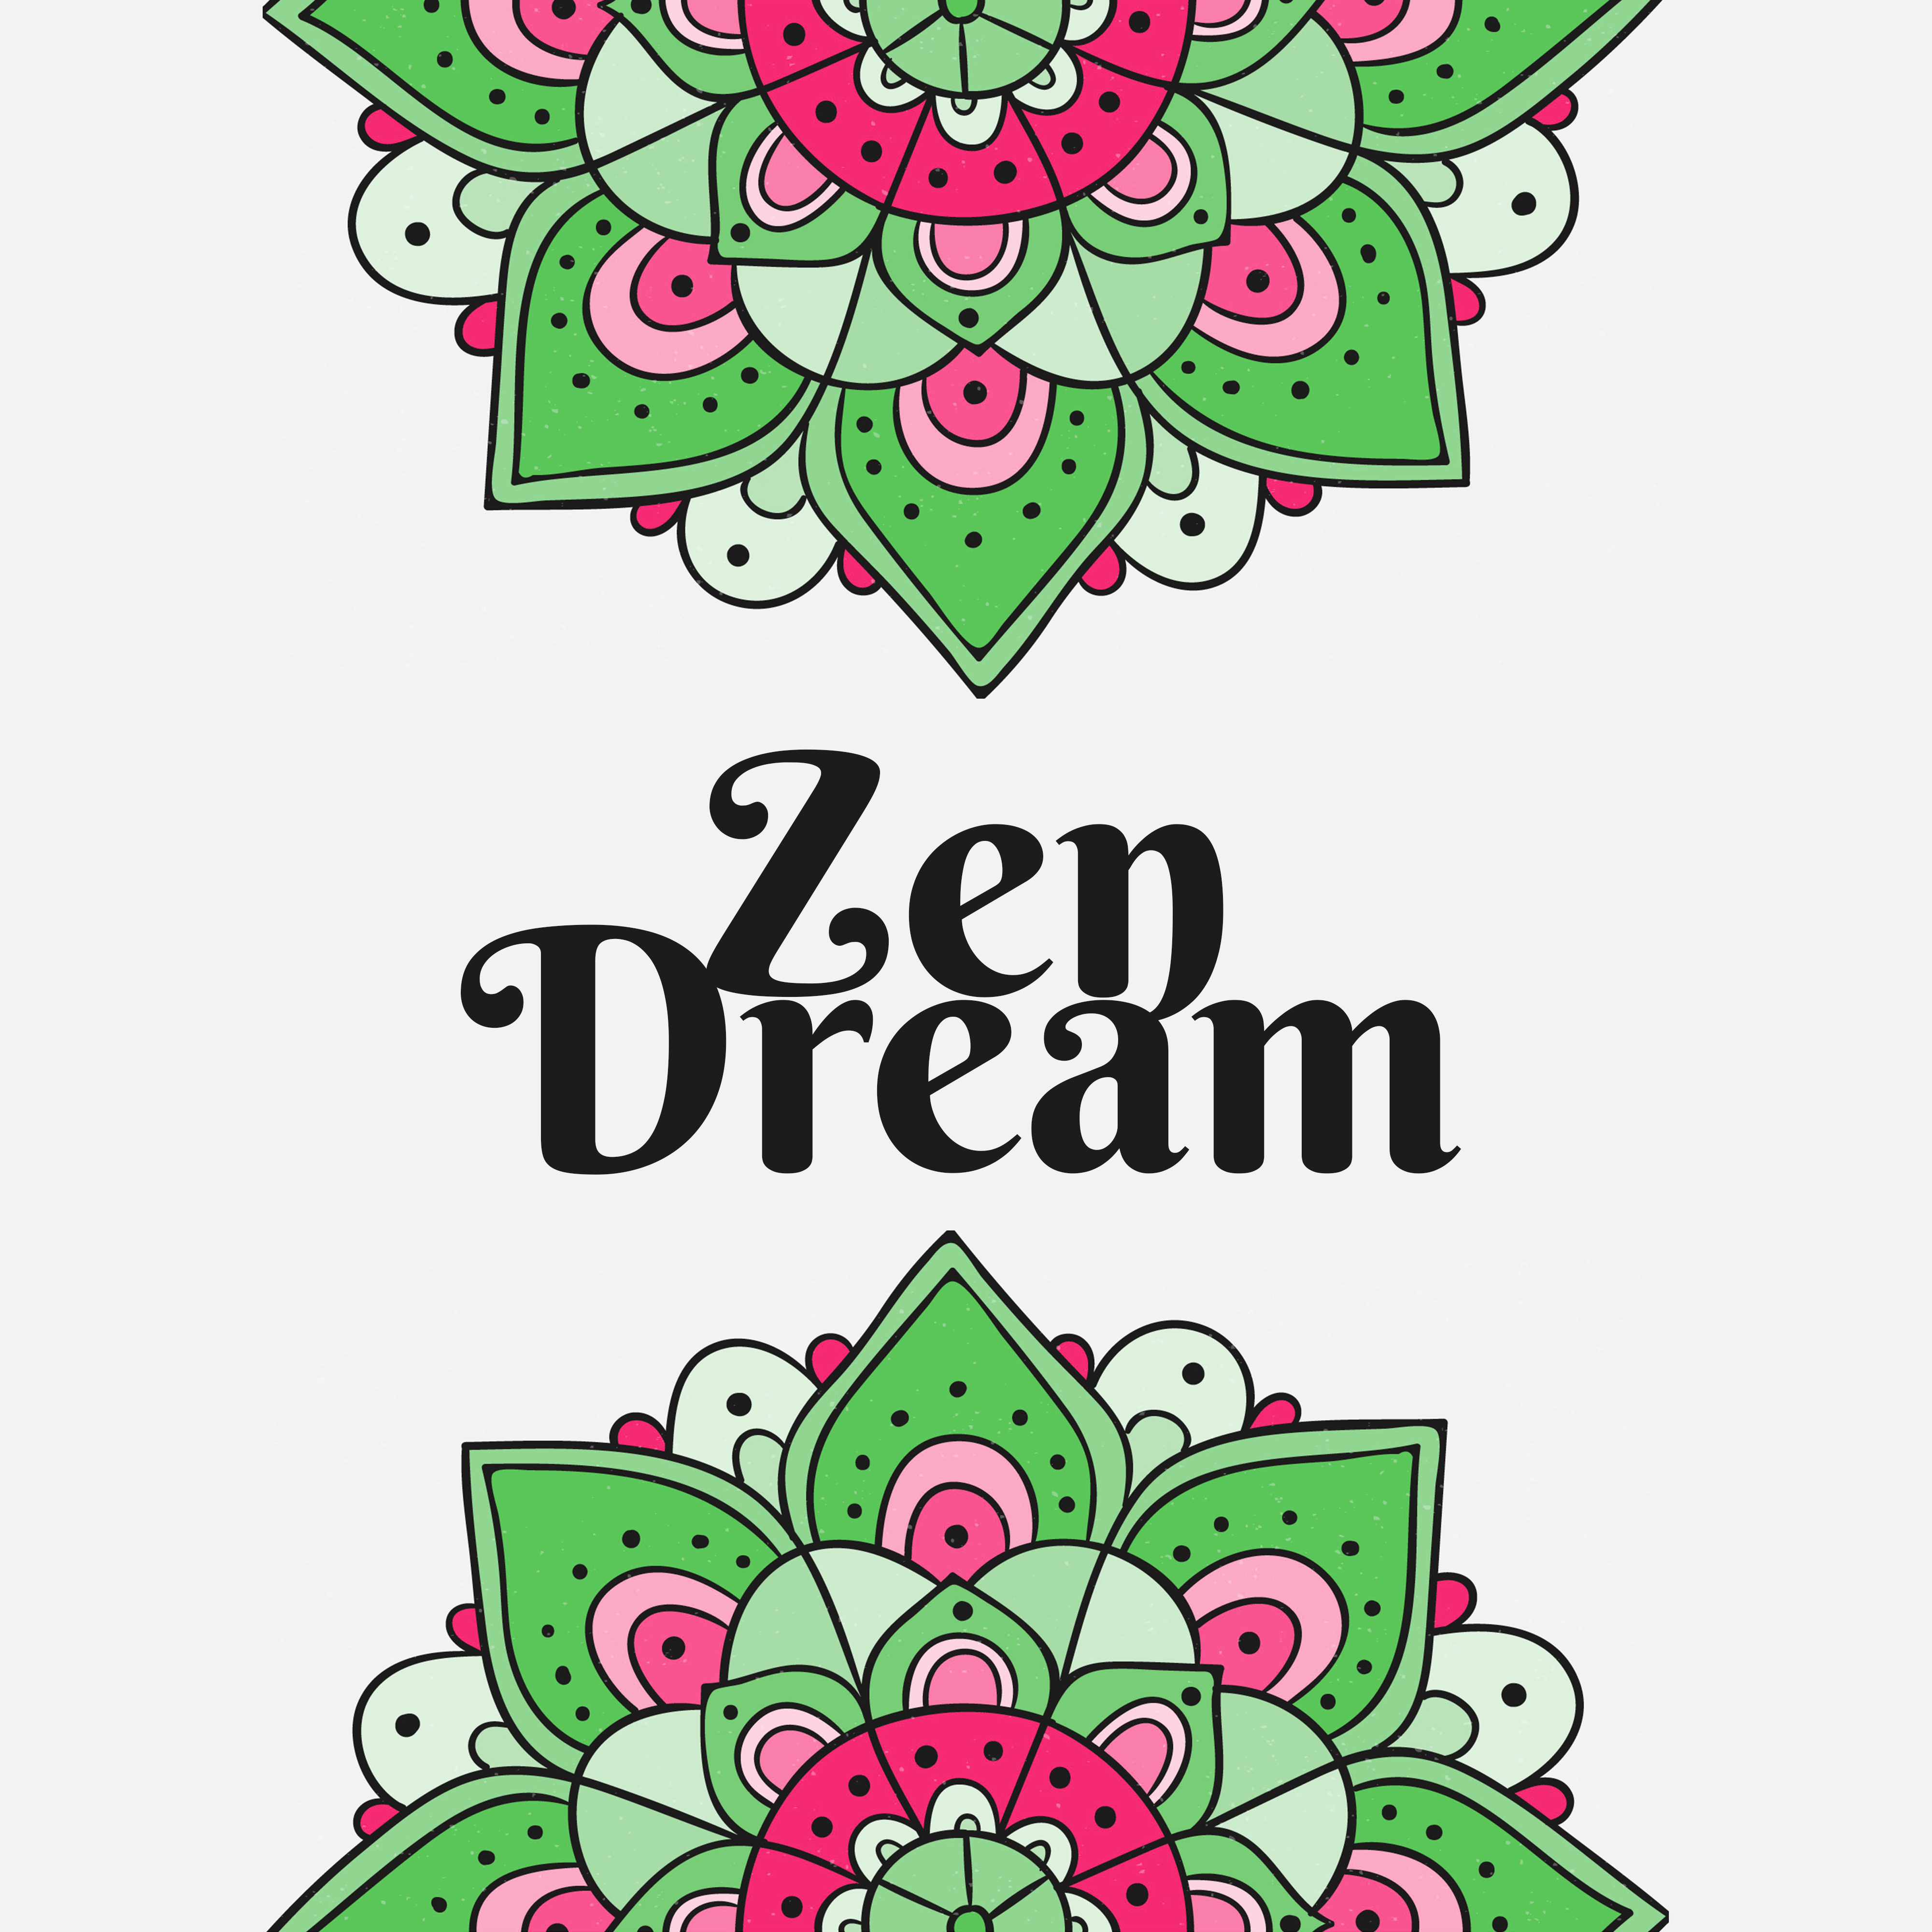 Zen Dream